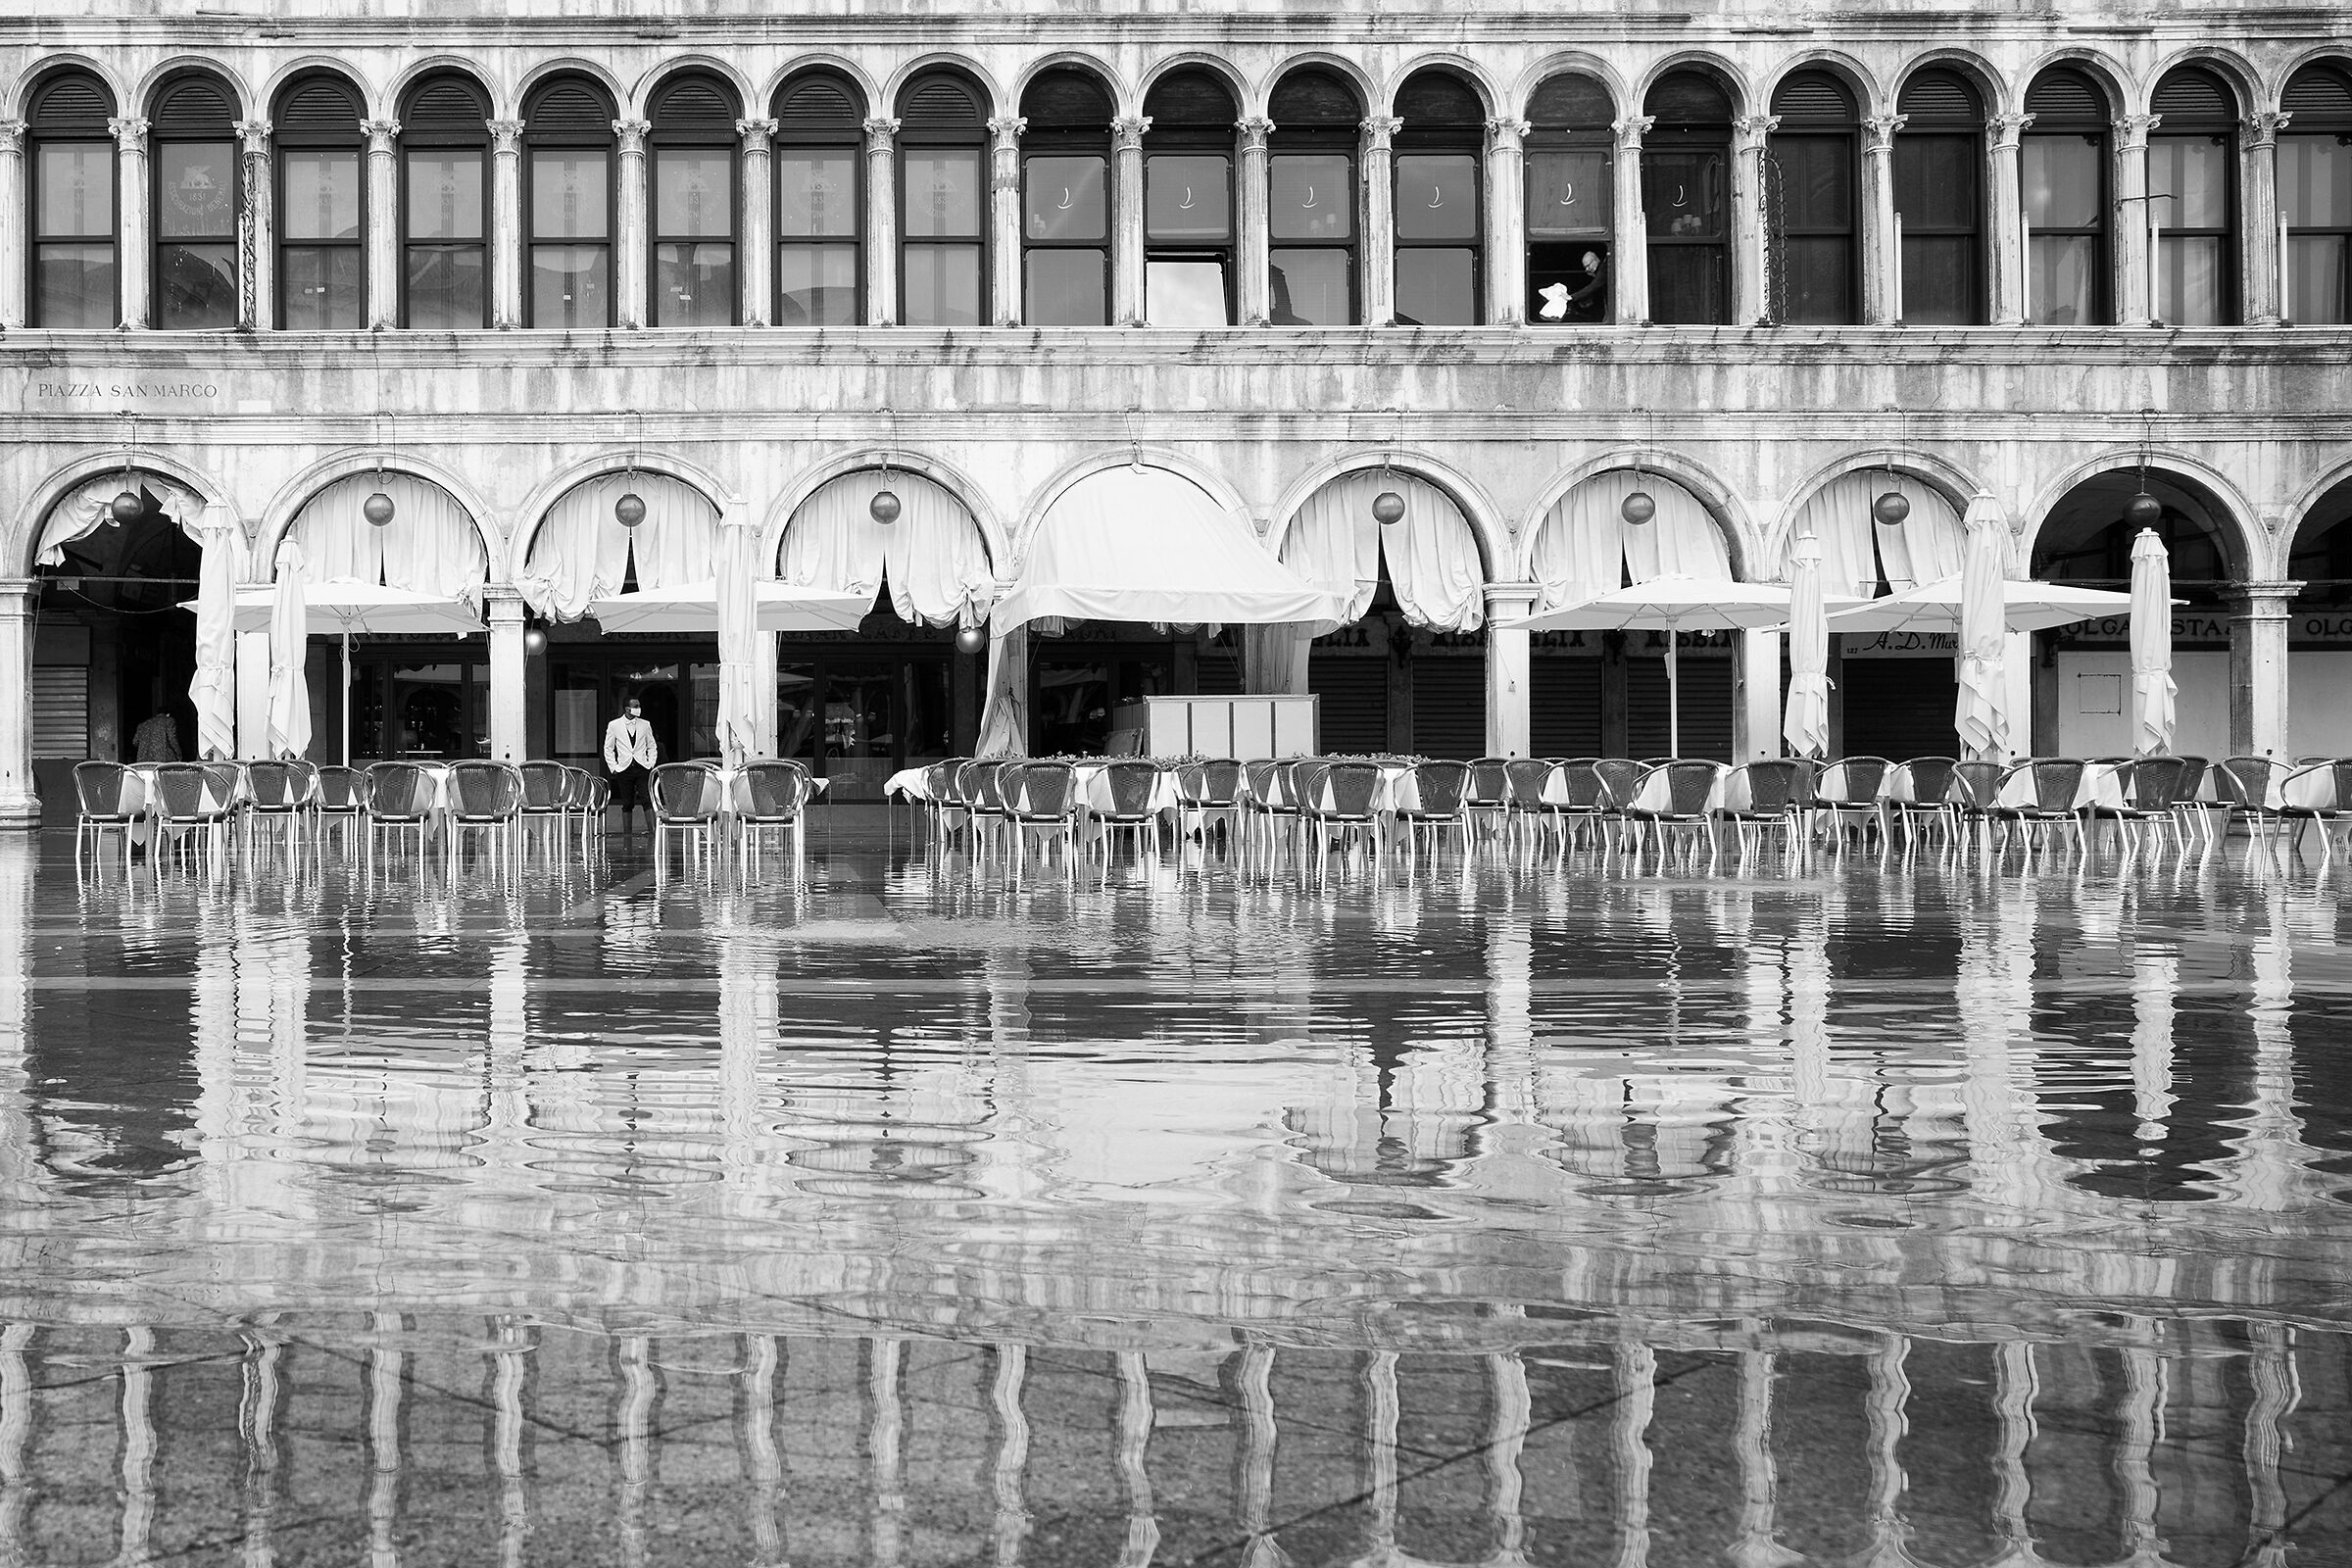 Acqua alta in San Marco...